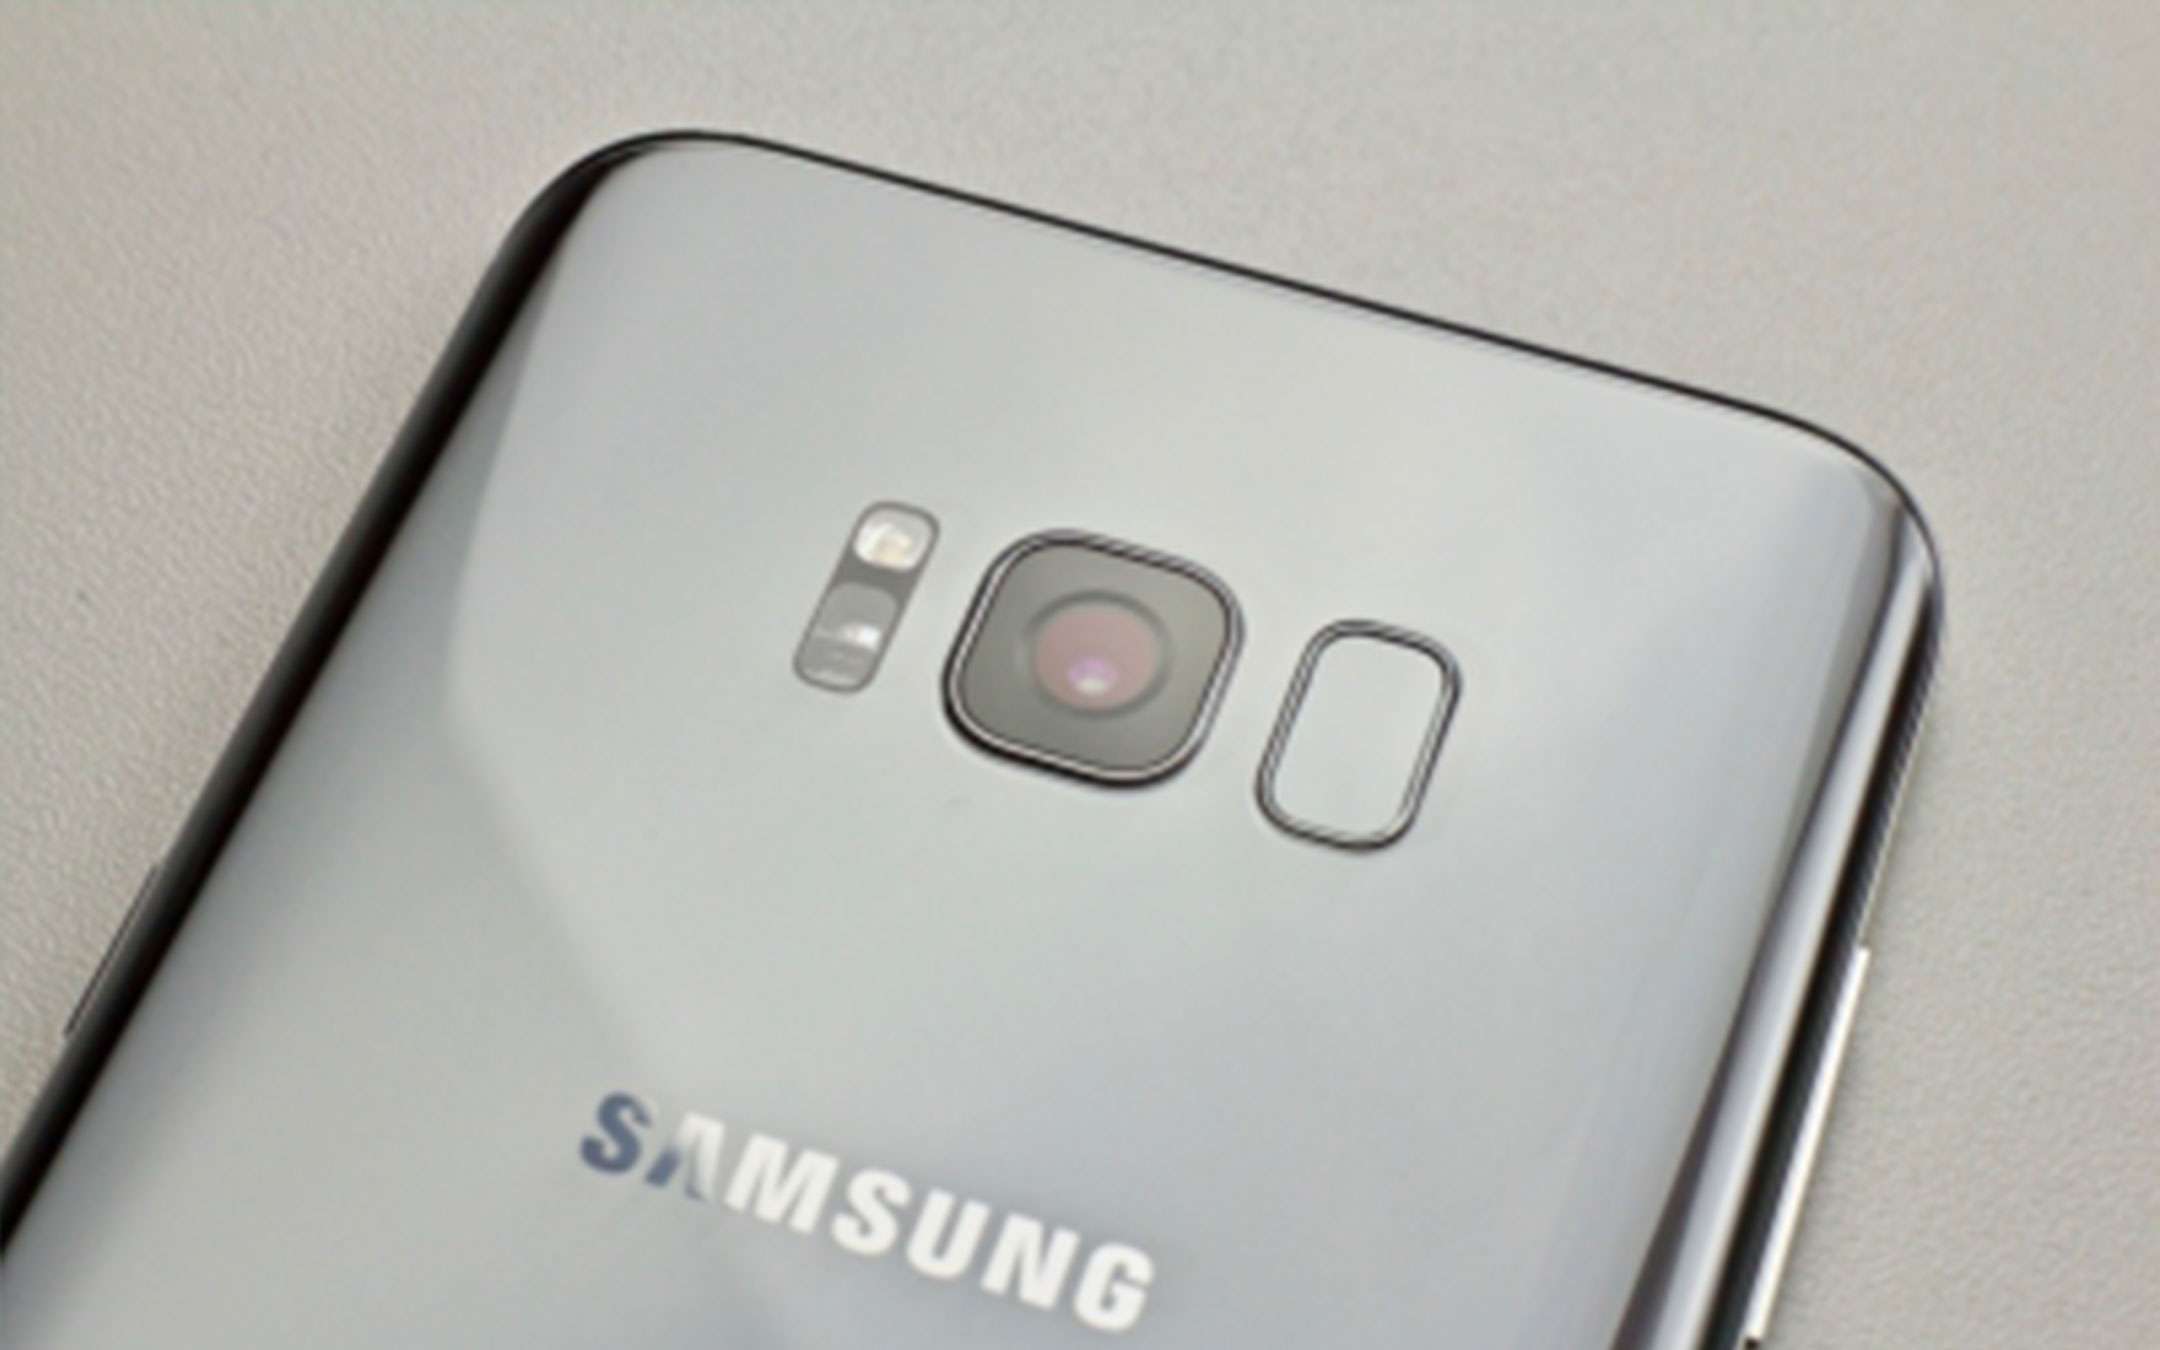 Samsung Galaxy S8 ed S8+: stop agli update mensili